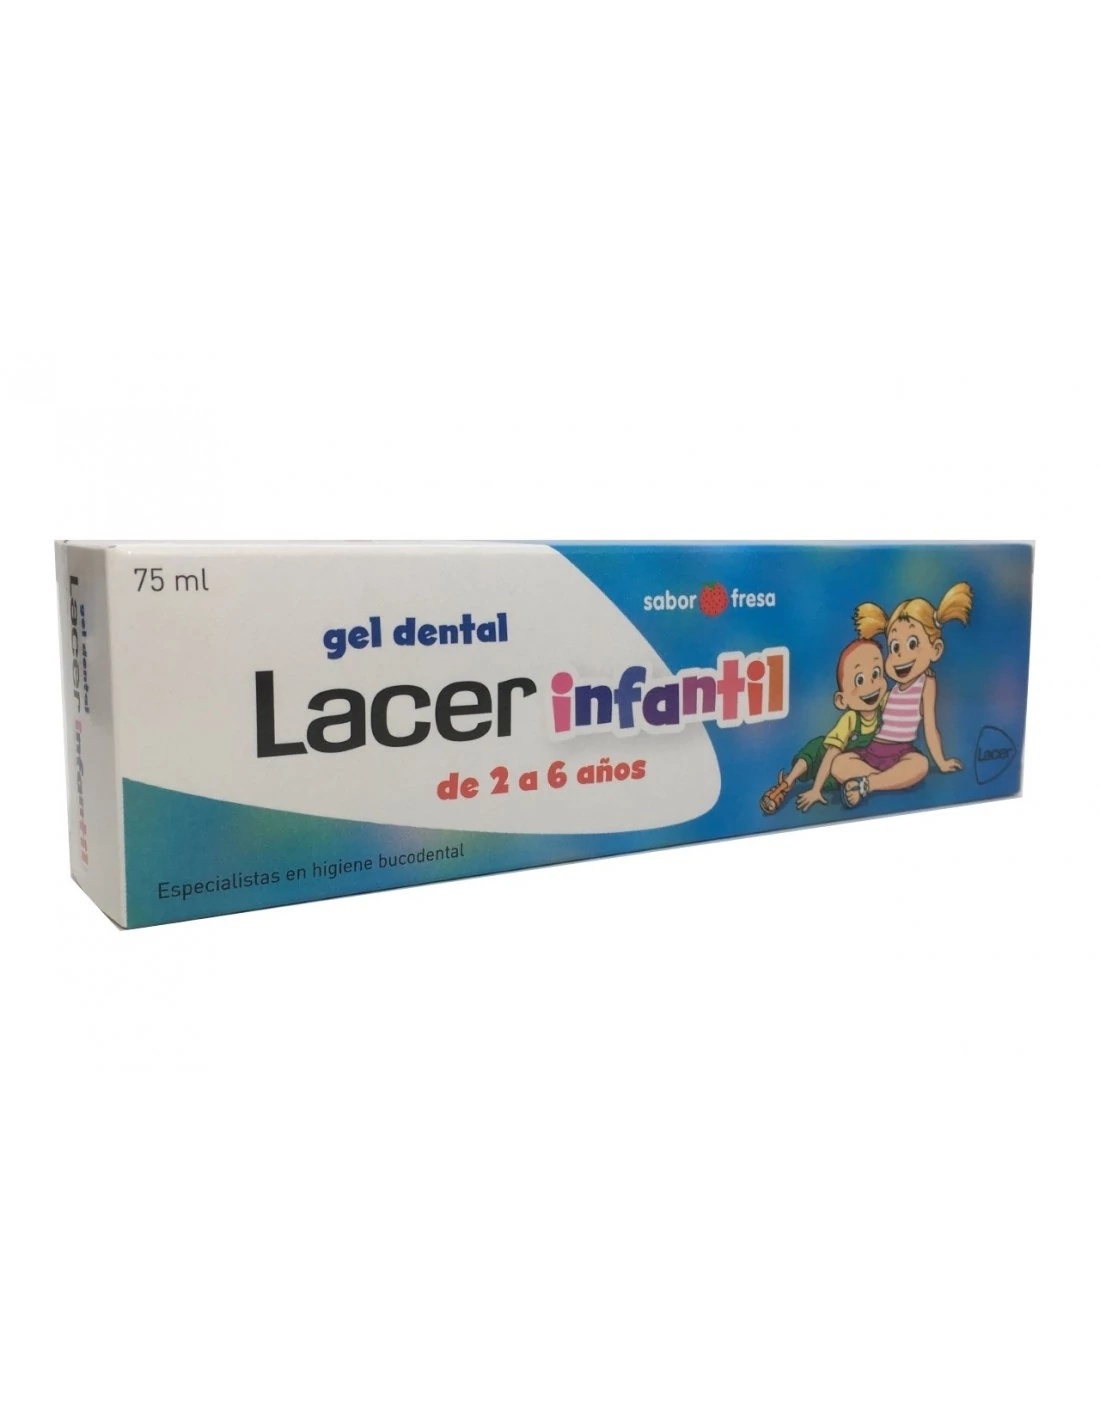 Lacer Infantil Gel Dental Sabor Fresa, Duplo (2 x 75 ml) + Regalo